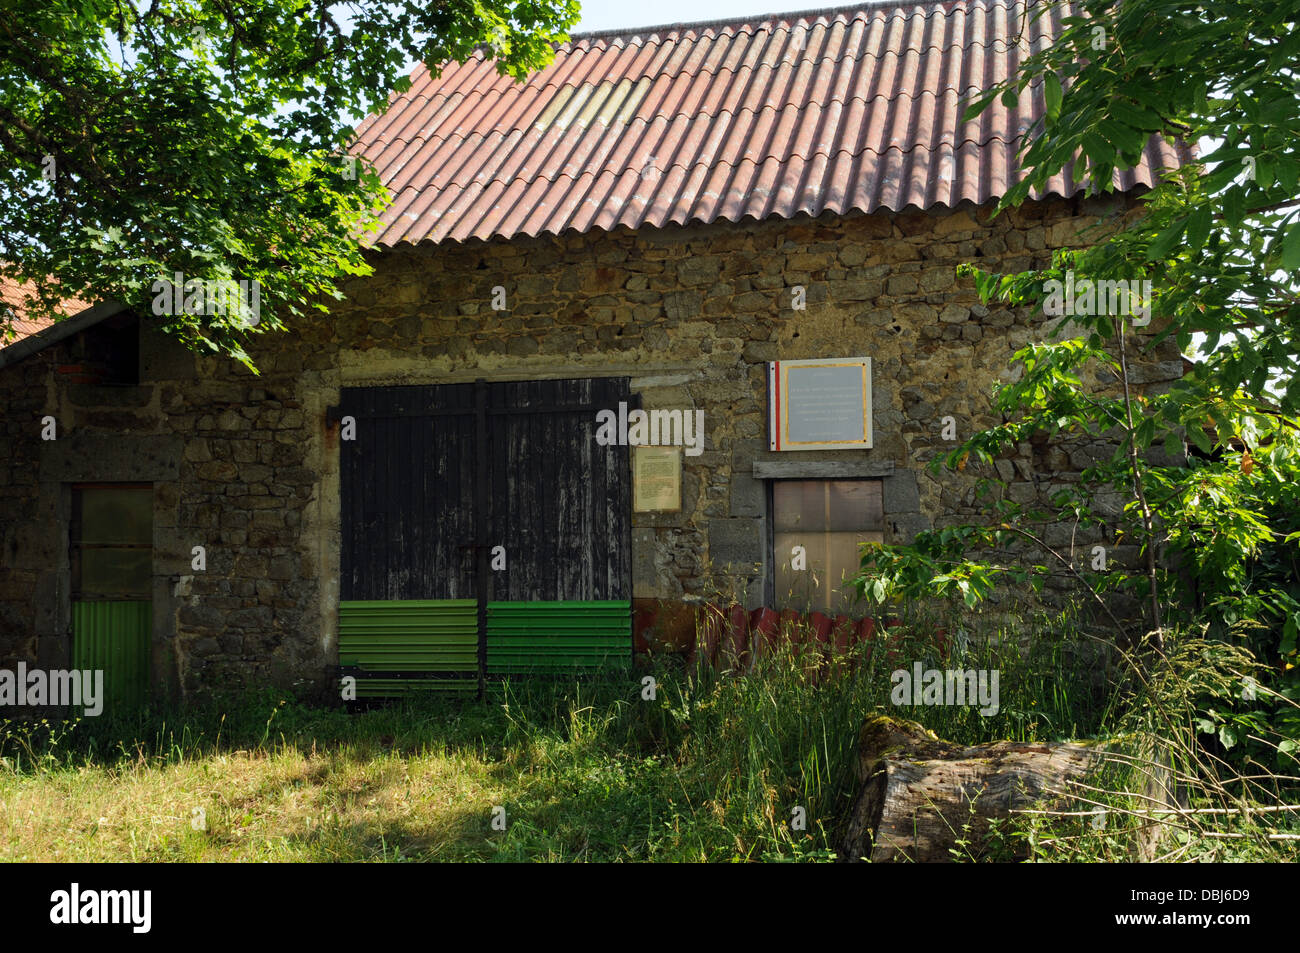 Ce petit bâtiment agricole dans la région de Combrailles de l'Auvergne, abritait autrefois le FTP, les membres de la Résistance française. Banque D'Images